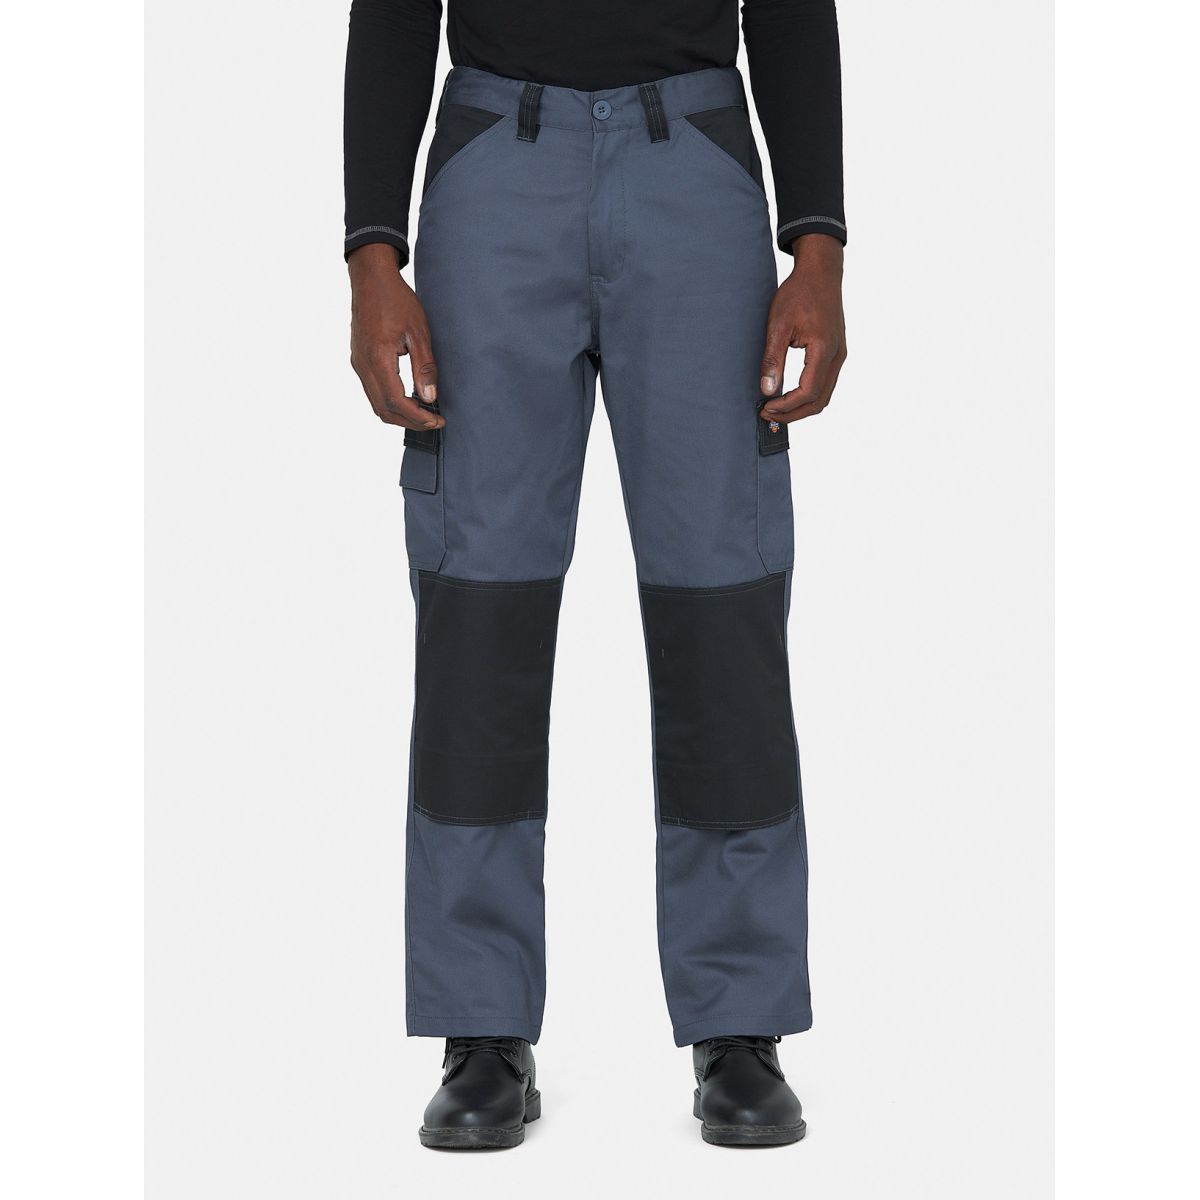 Pantalon Everyday Gris et noir- Dickies - Taille 52 0